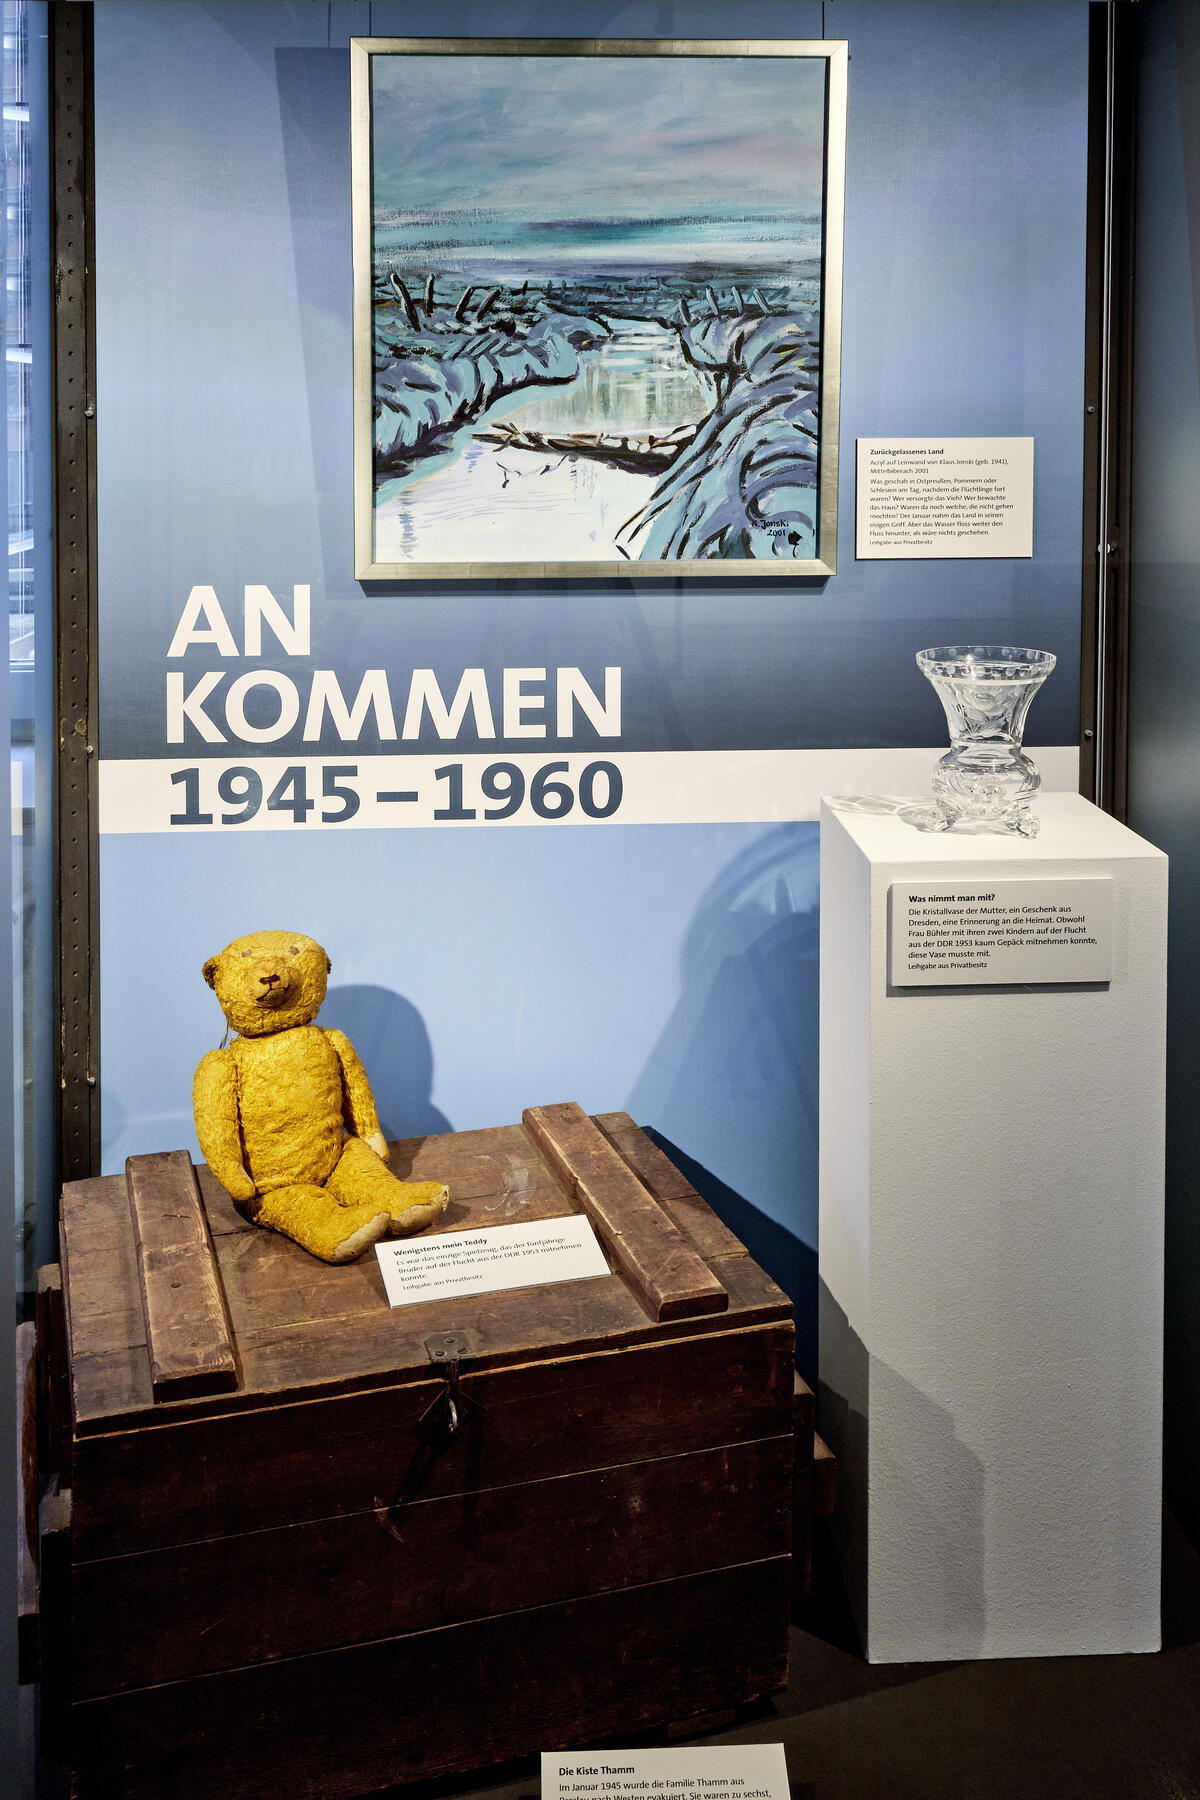 Bild vergrößern: Ausstellungsraum mit einem Teddy, einer Holzkiste und einer Kristallvase, die Menschen auf der Flucht mitgenommen haben.